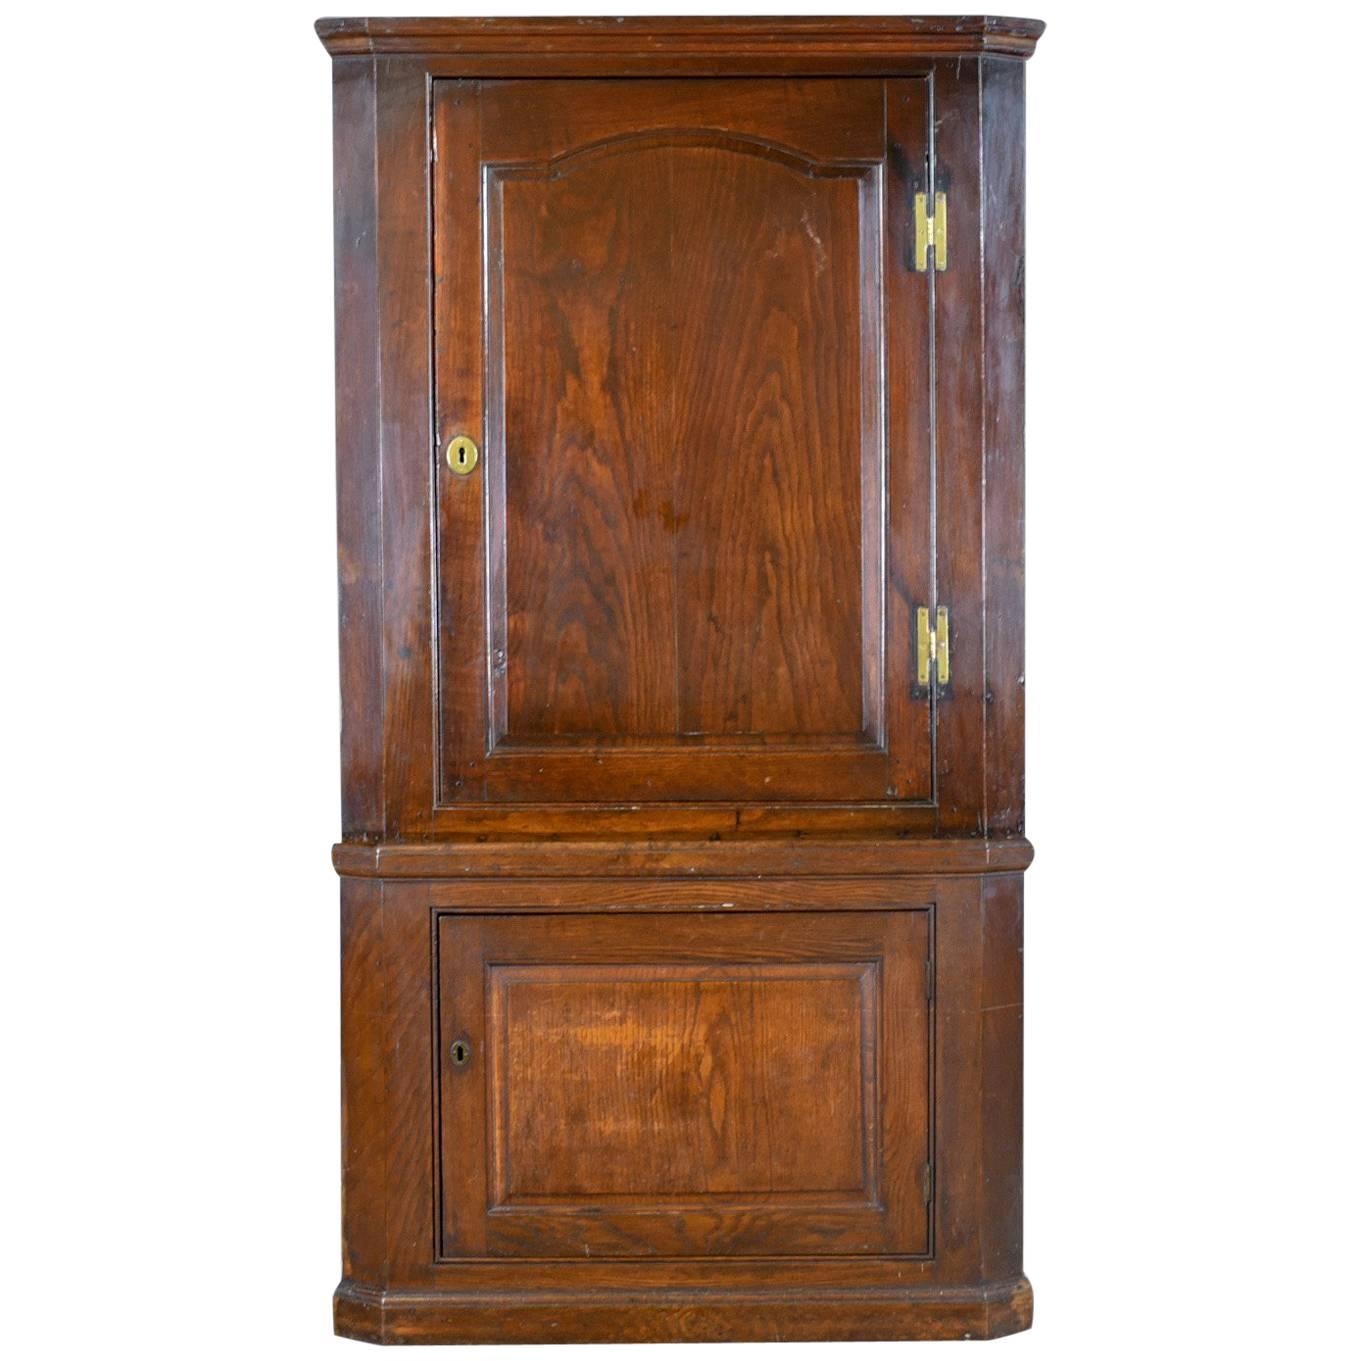 Antique Corner Cabinet, English, Oak, Georgian, Floor Standing Cupboard